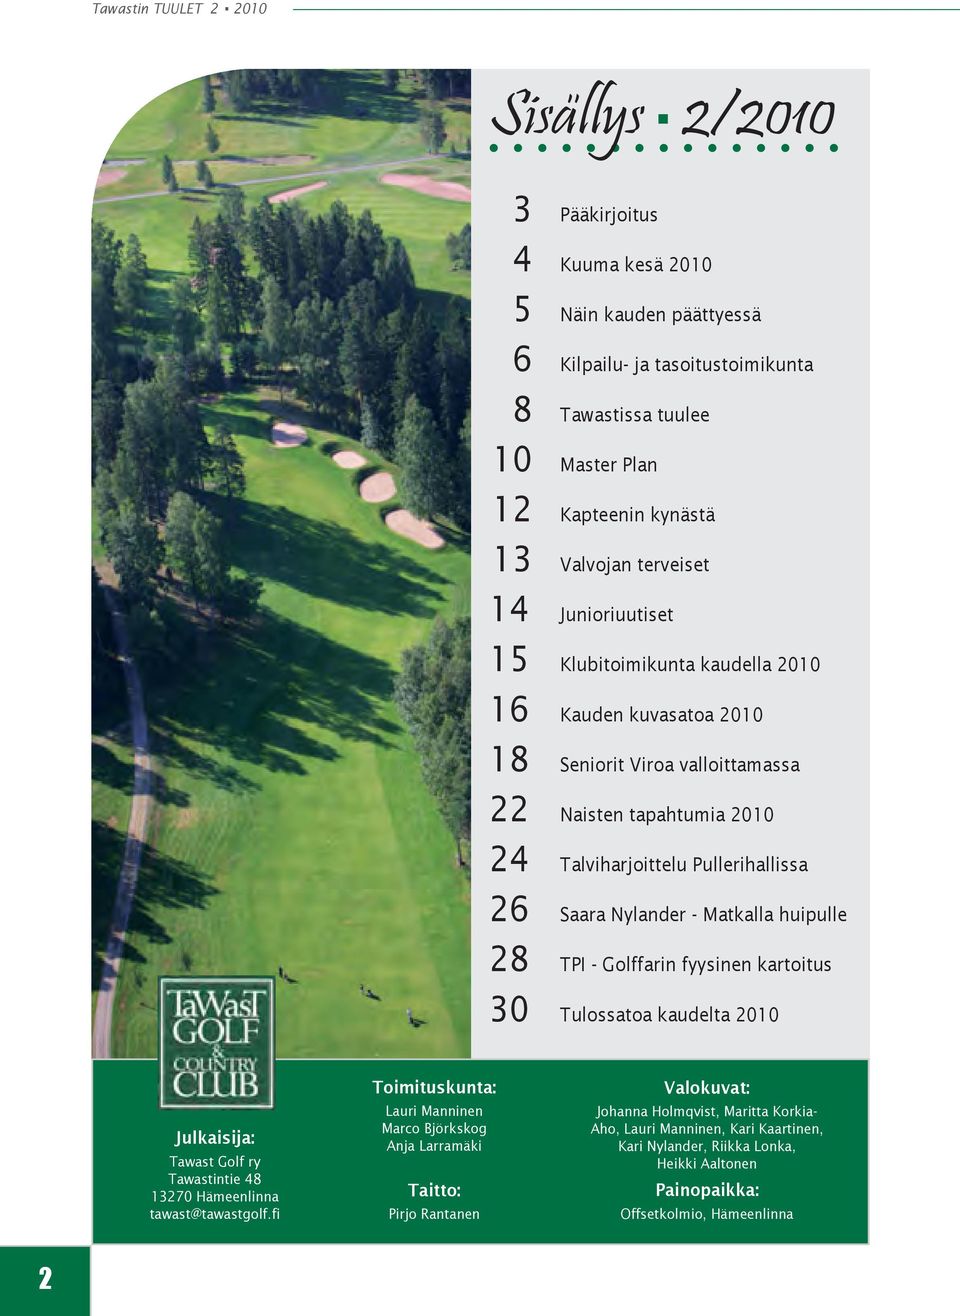 huipulle 28 TPI - Golffarin fyysinen kartoitus 30 Tulossatoa kaudelta 2010 Julkaisija: Tawast Golf ry Tawastintie 48 13270 Hämeenlinna tawast@tawastgolf.